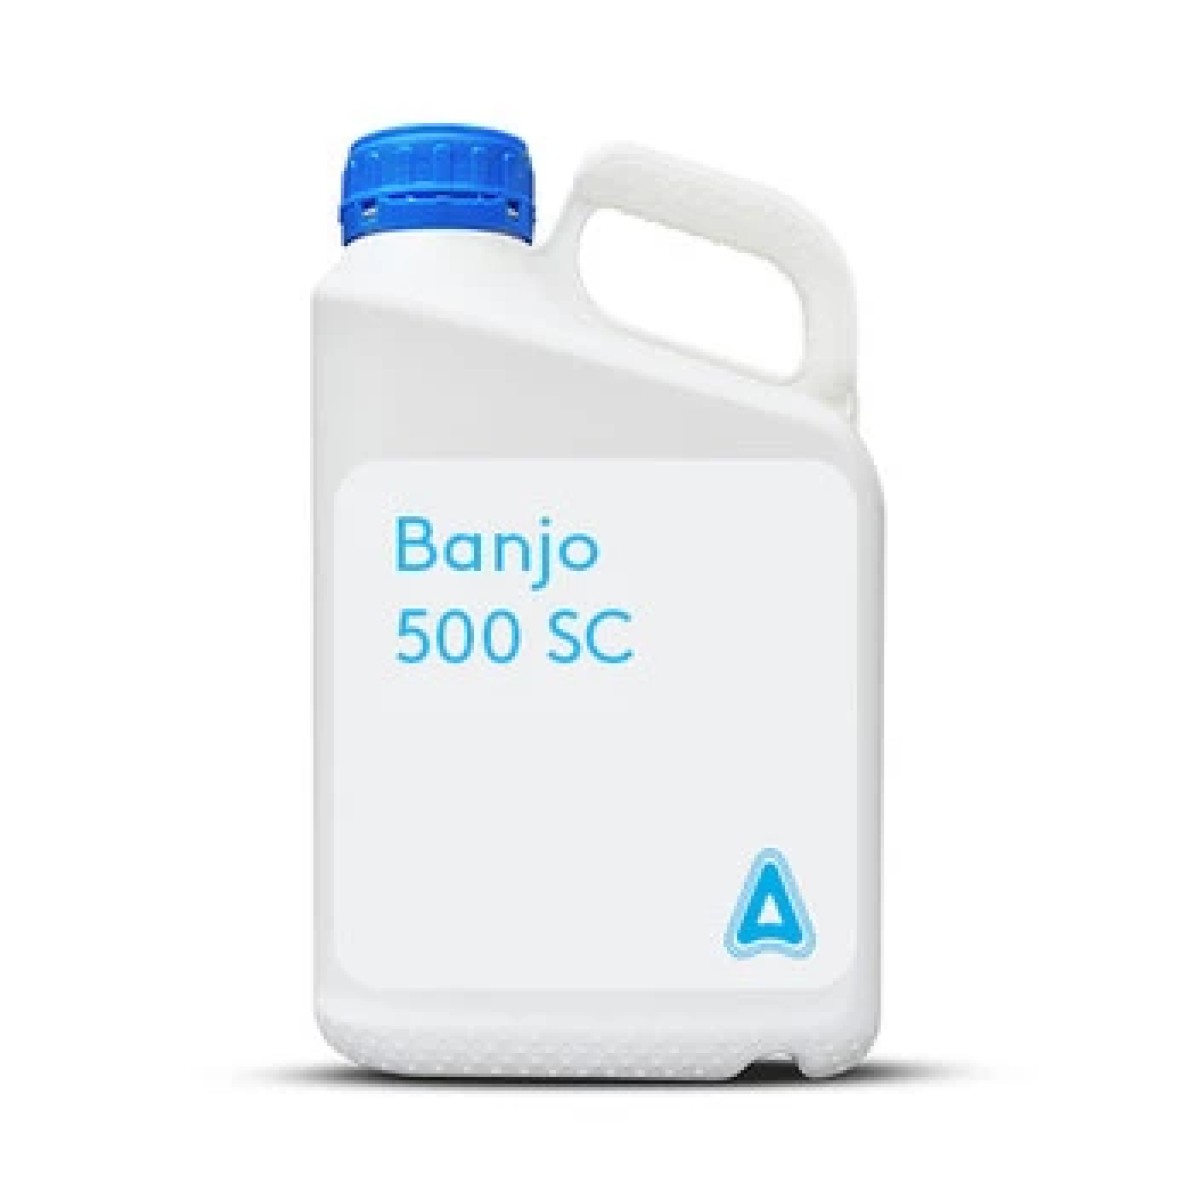 Banjo 500 SC